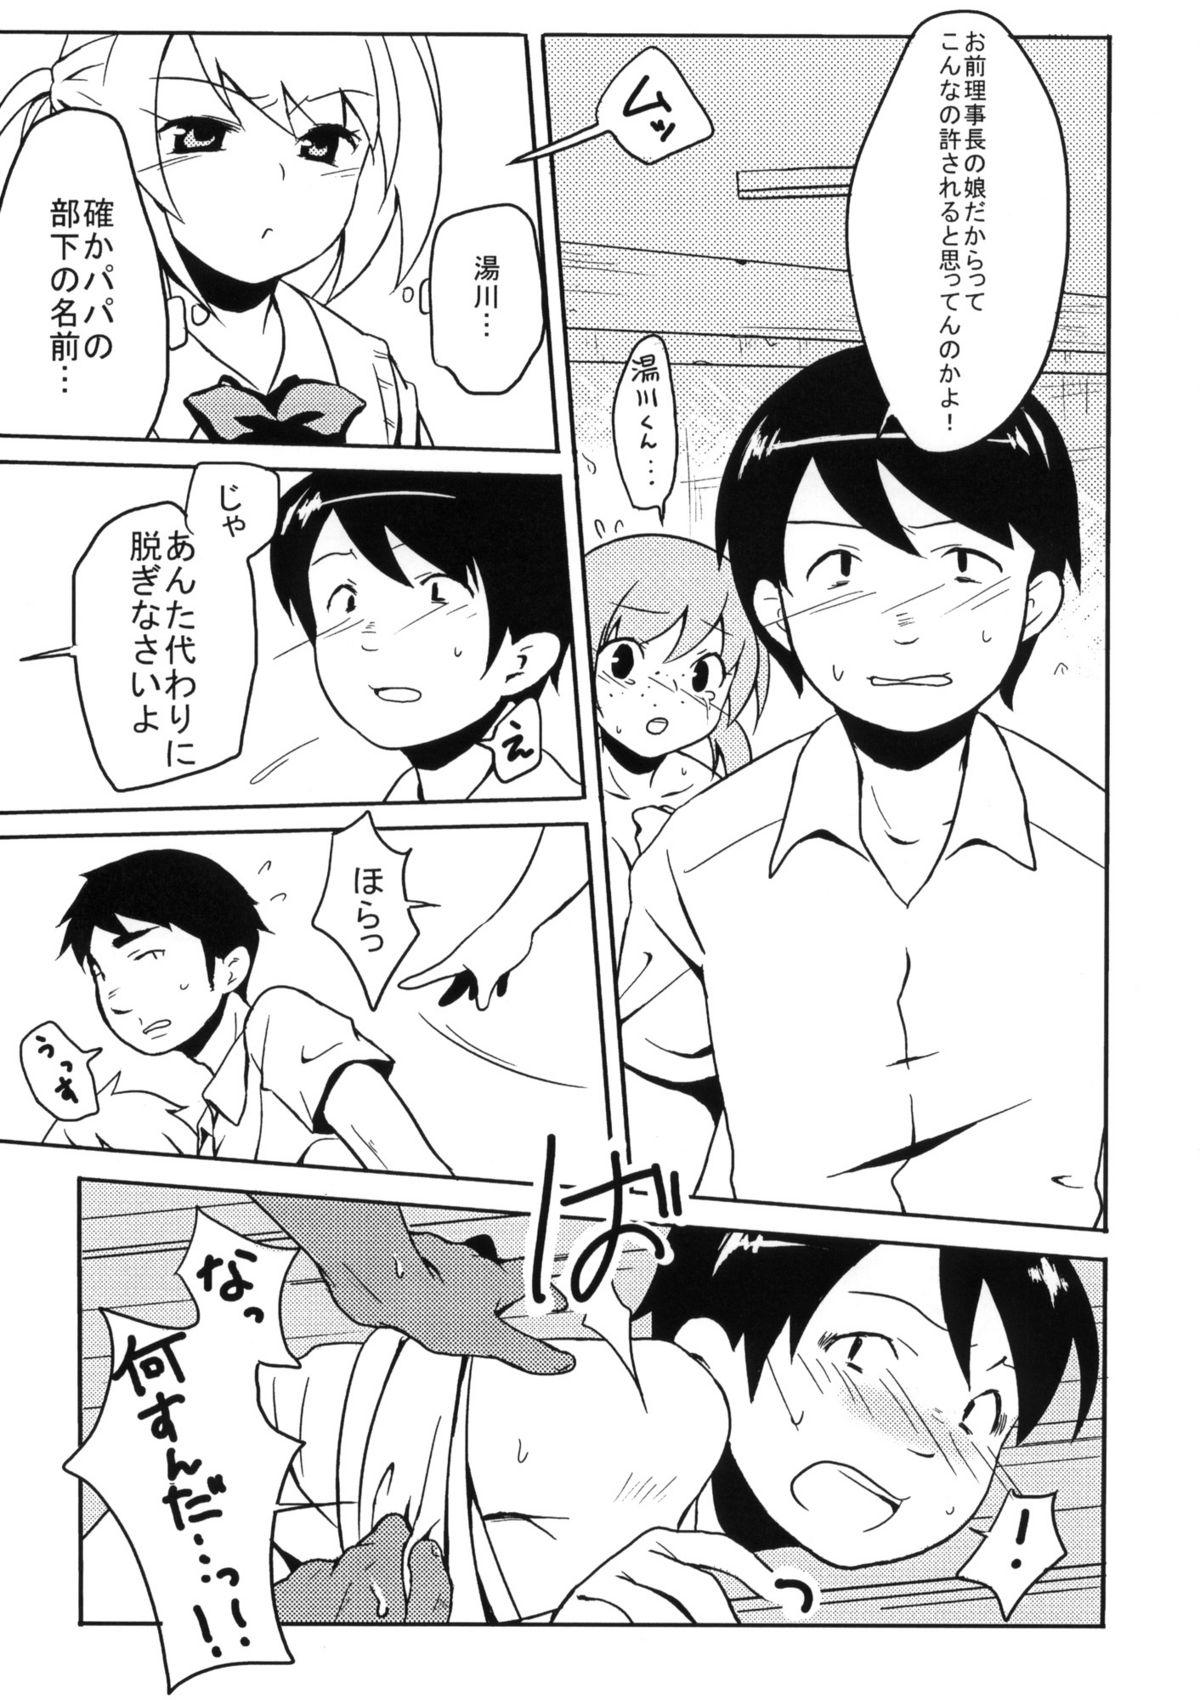 Breeding Ijimekko vs Zenkou Seito Cruising - Page 4